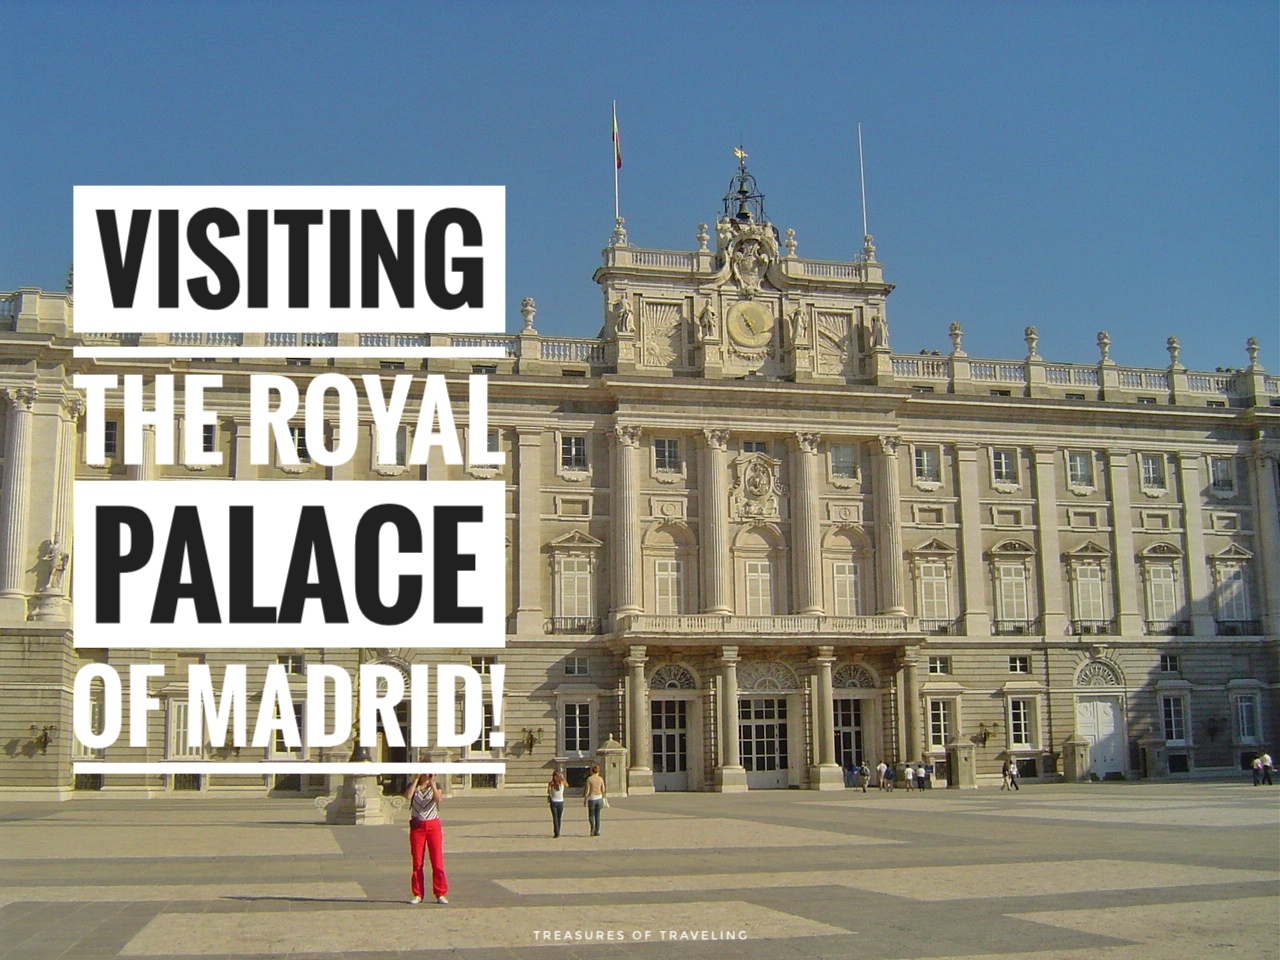 Visiting the Royal Palace of Madrid!